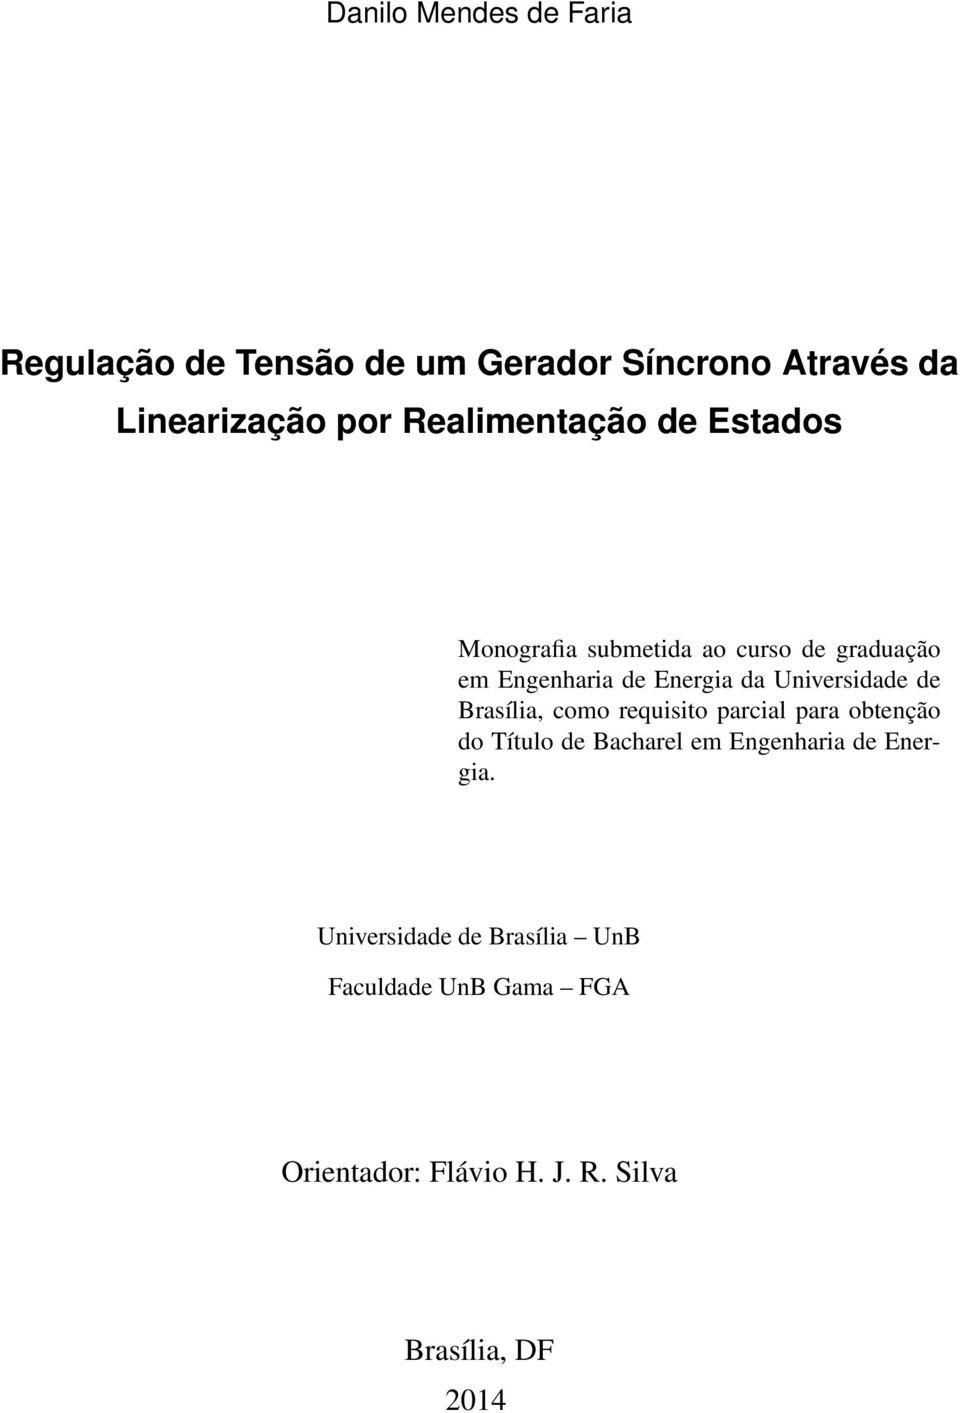 Universidade de Brasília, como requisito parcial para obtenção do Título de Bacharel em Engenharia